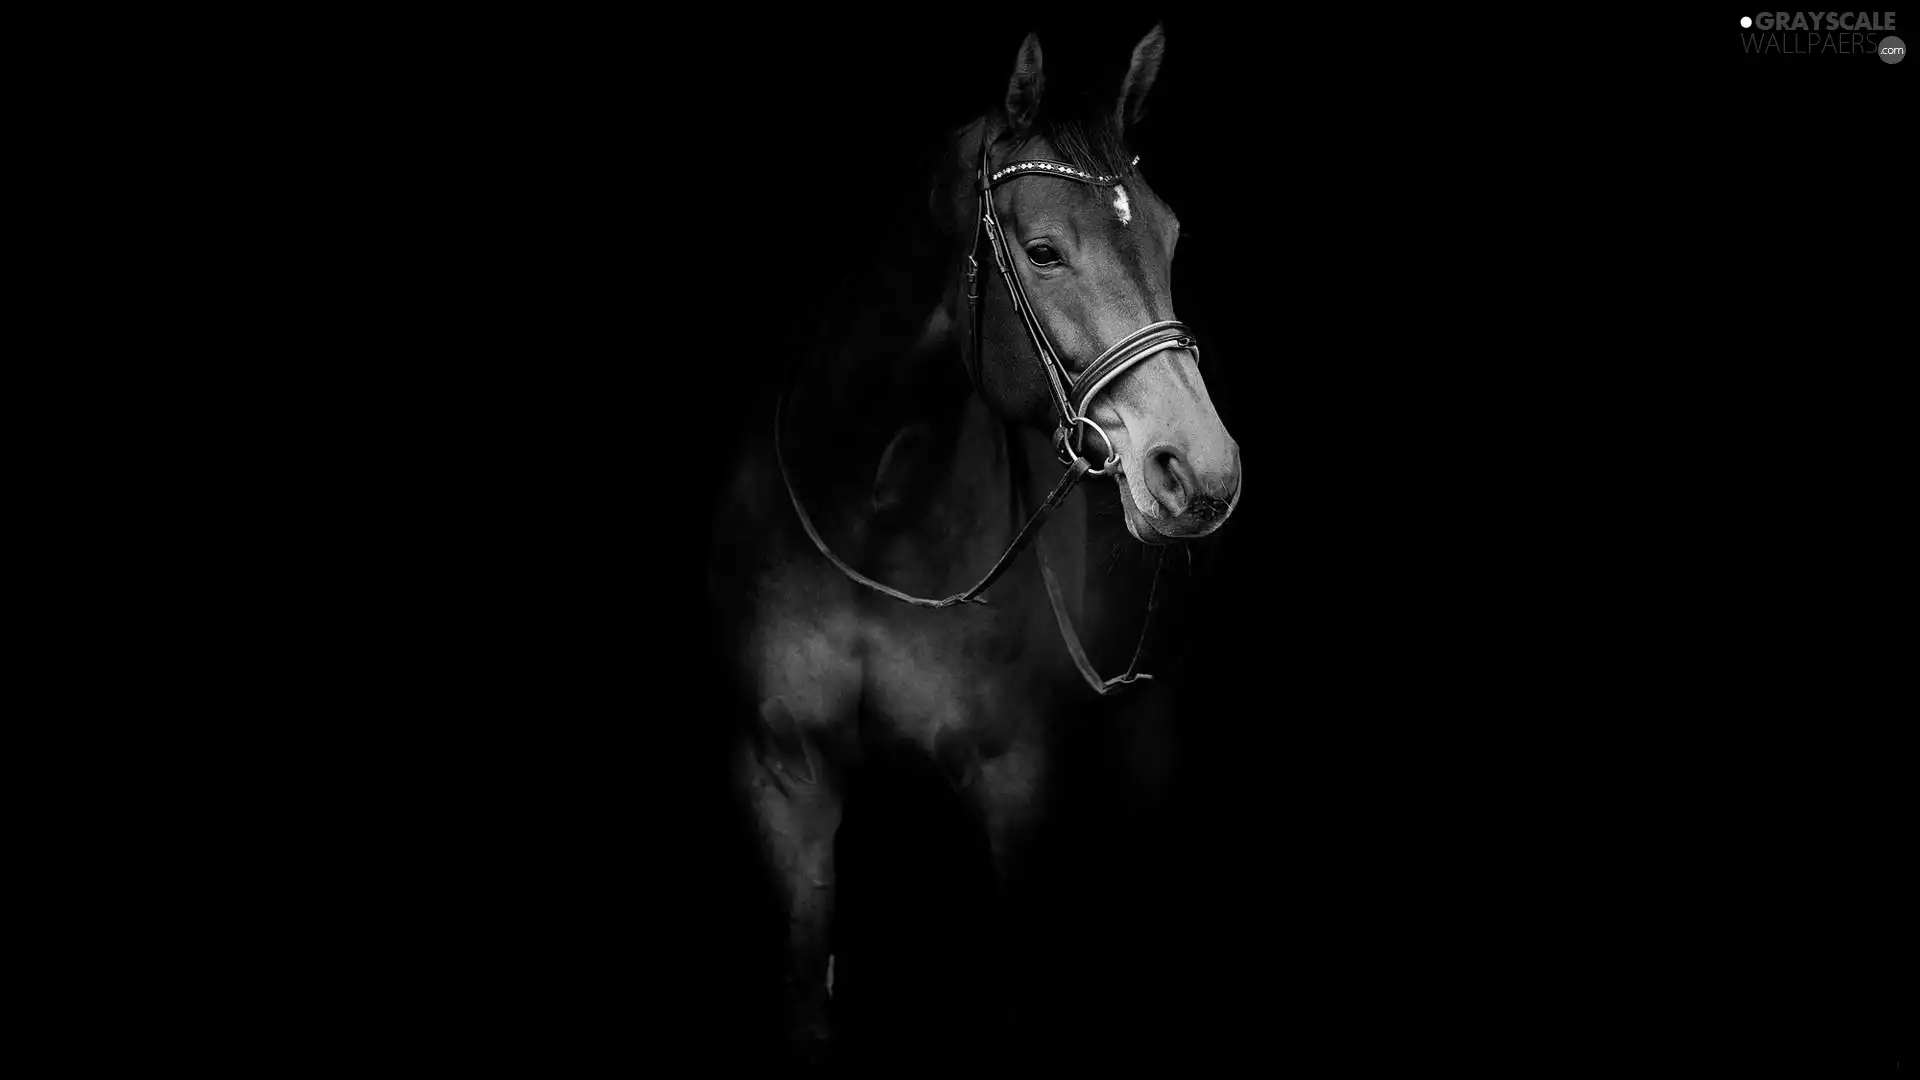 background, Horse, Black